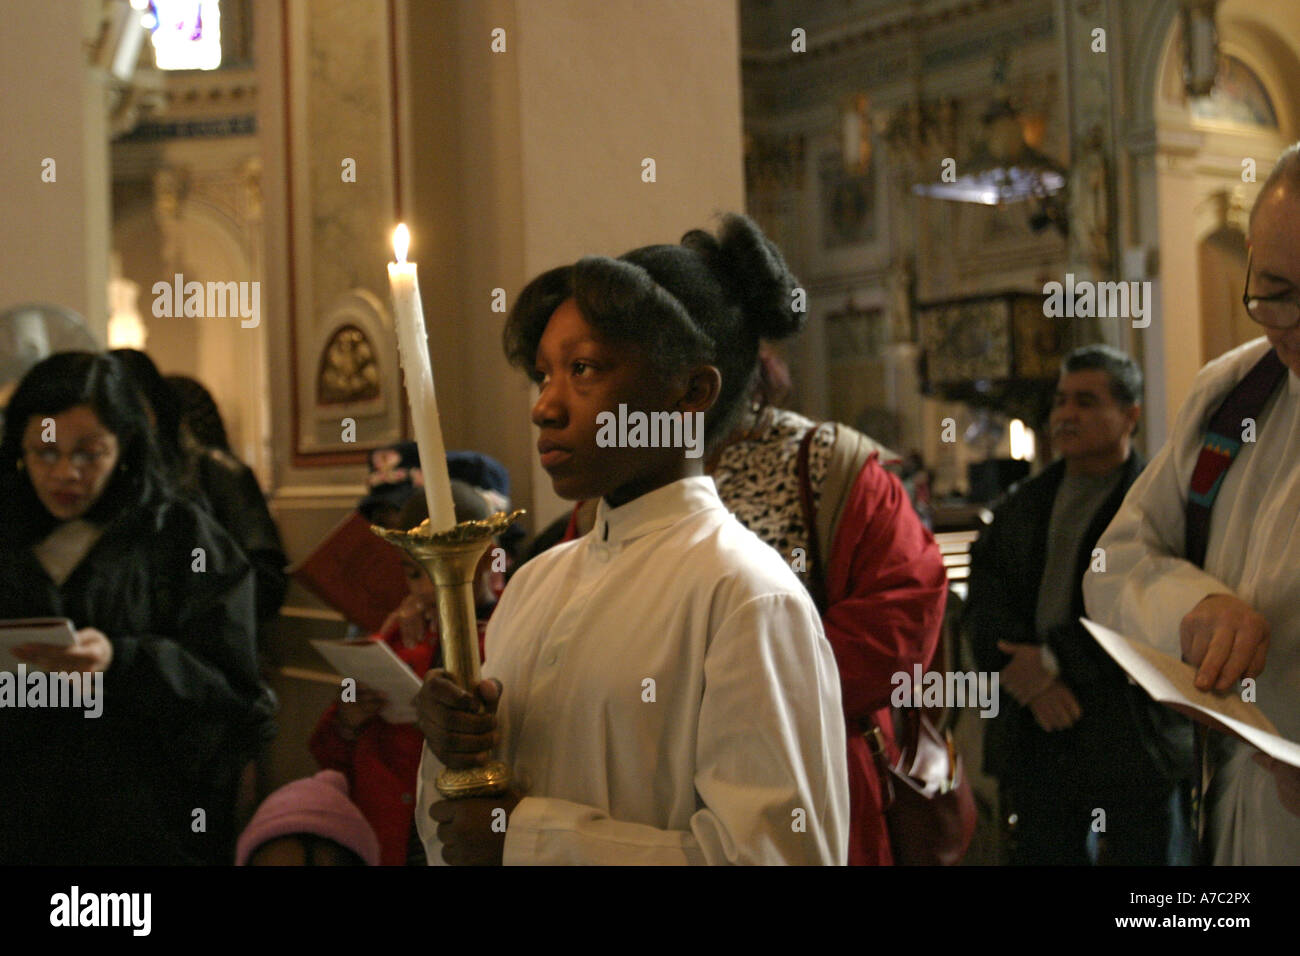 Alter ragazza durante la messa a Santa Barbara chiesa cattolica il Venerdì Santo durante passando attraverso le stazioni della Croce Foto Stock